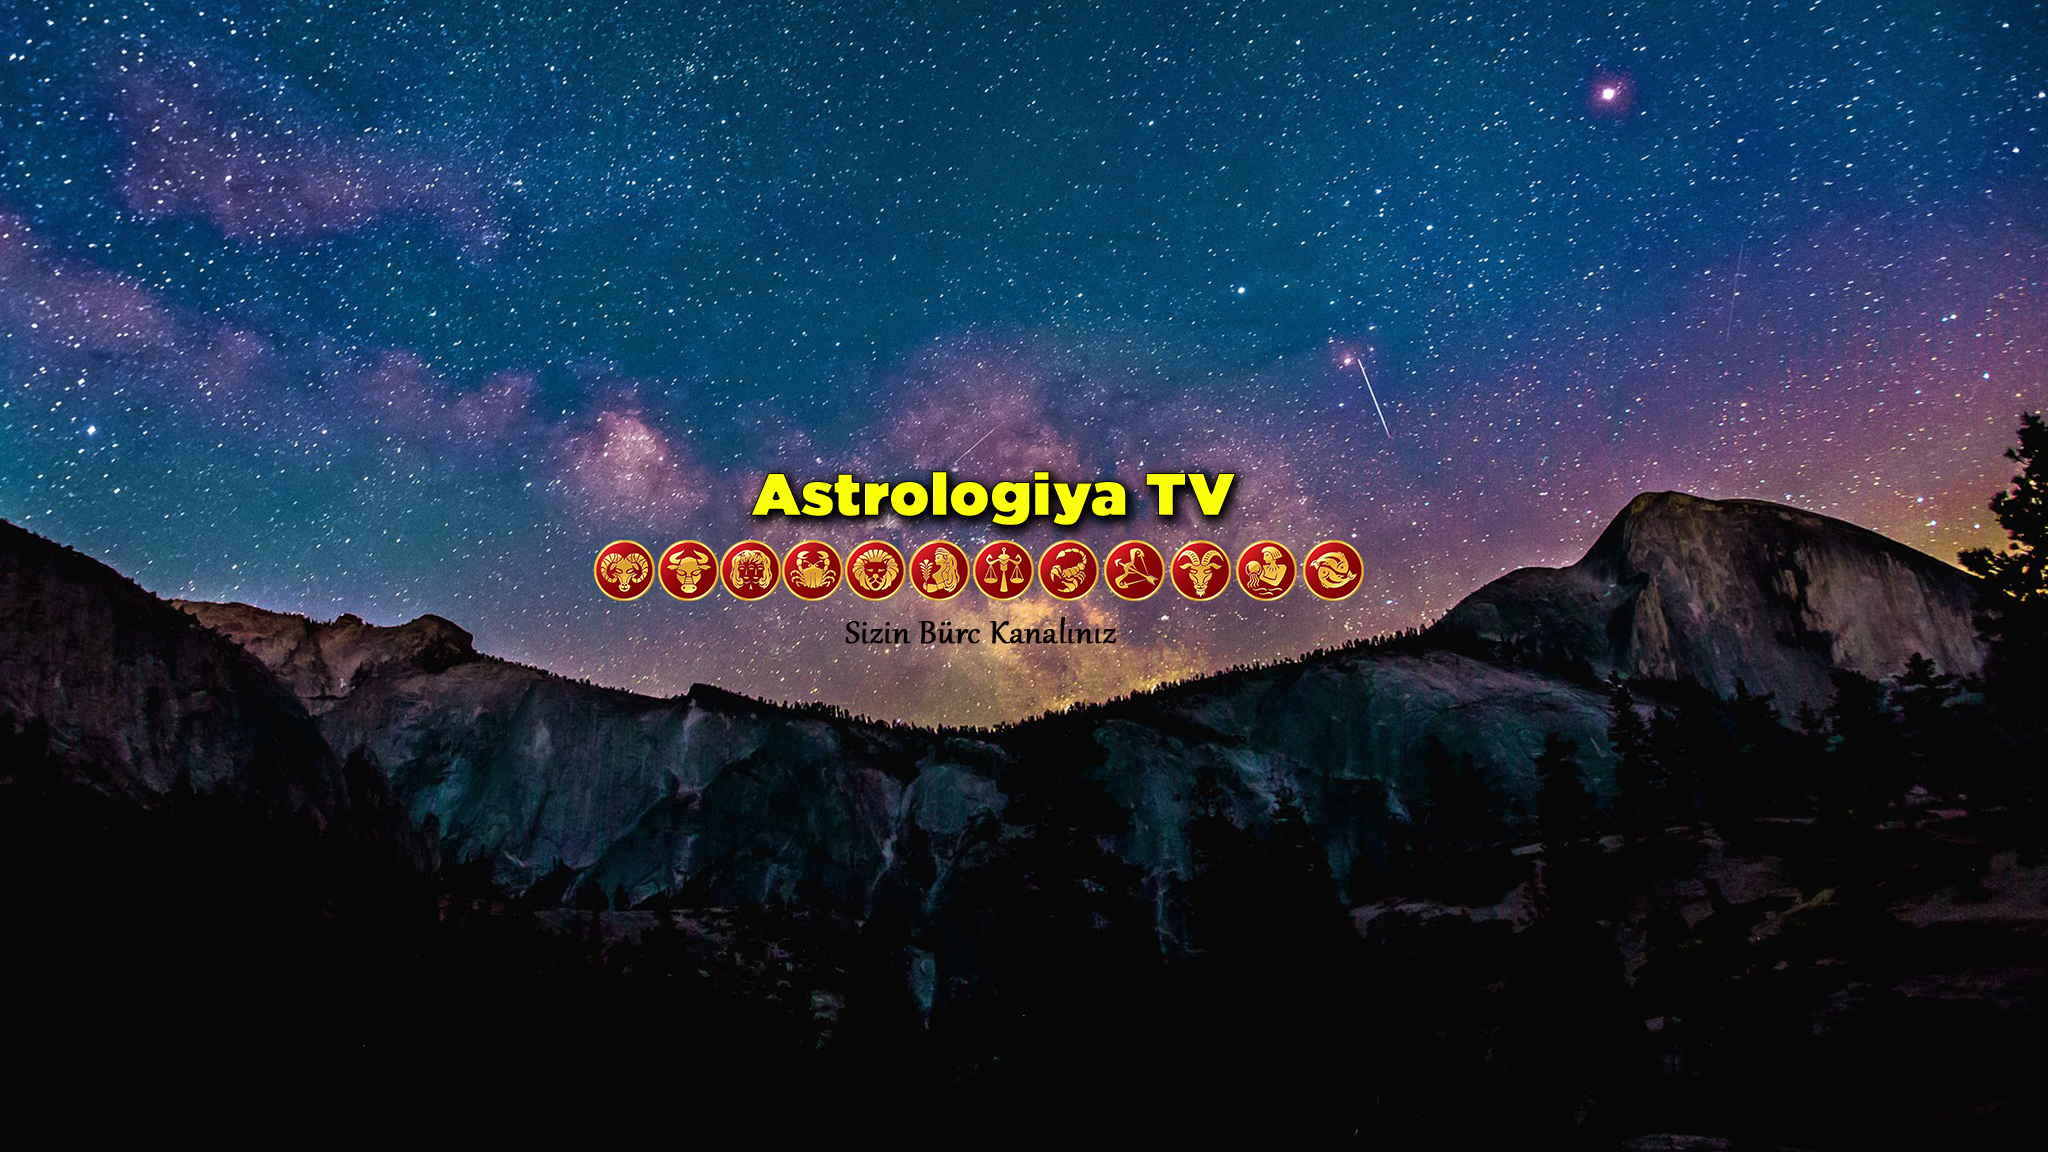 Astrologiya TV